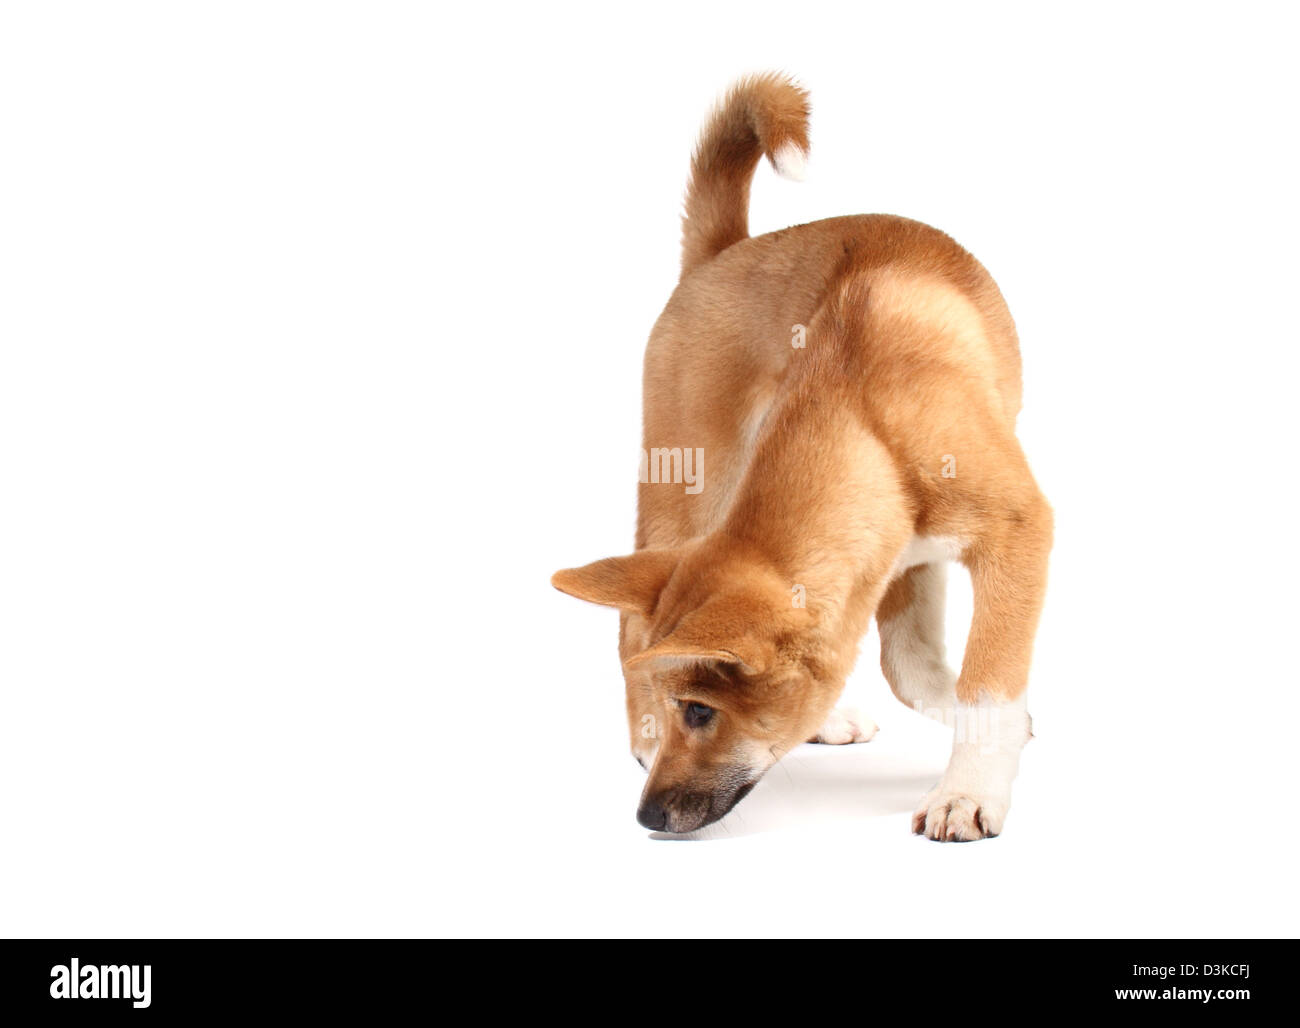 Dingo in a studio Stock Photo